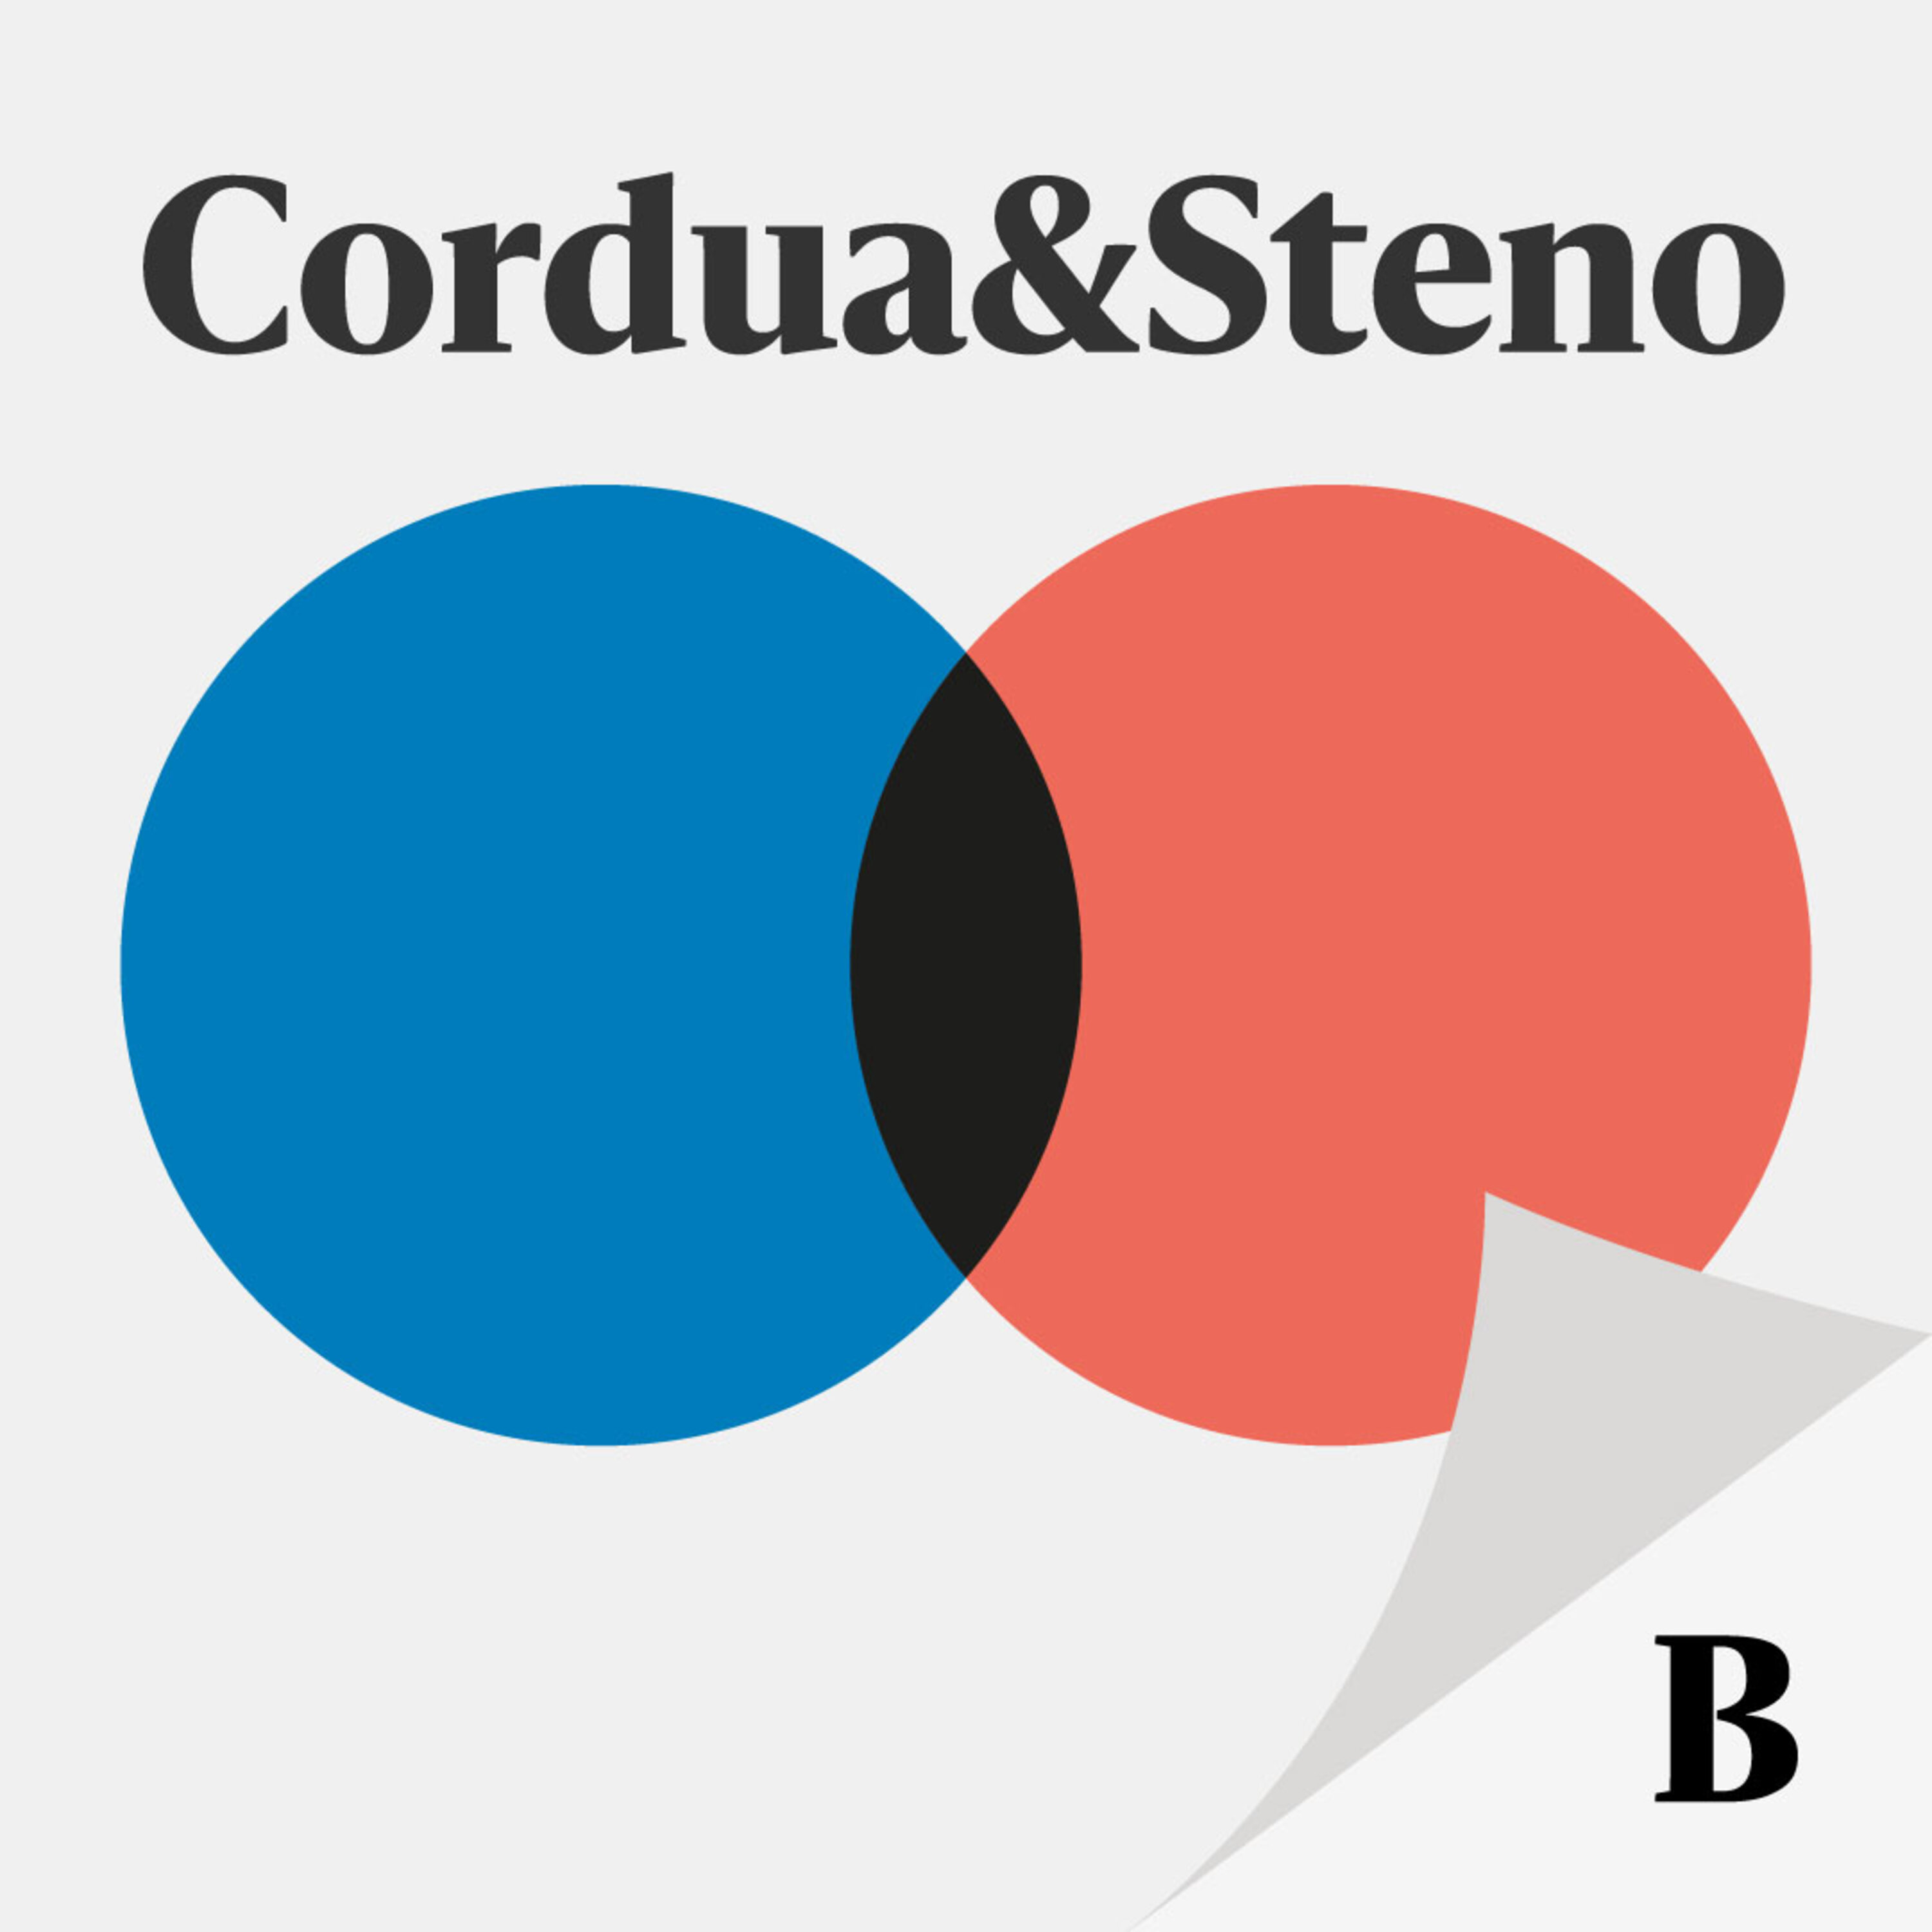 Cordua & Steno valgspecial:  Hvad gør den usikre borgerlige vælger ved dette folketingsvalg?